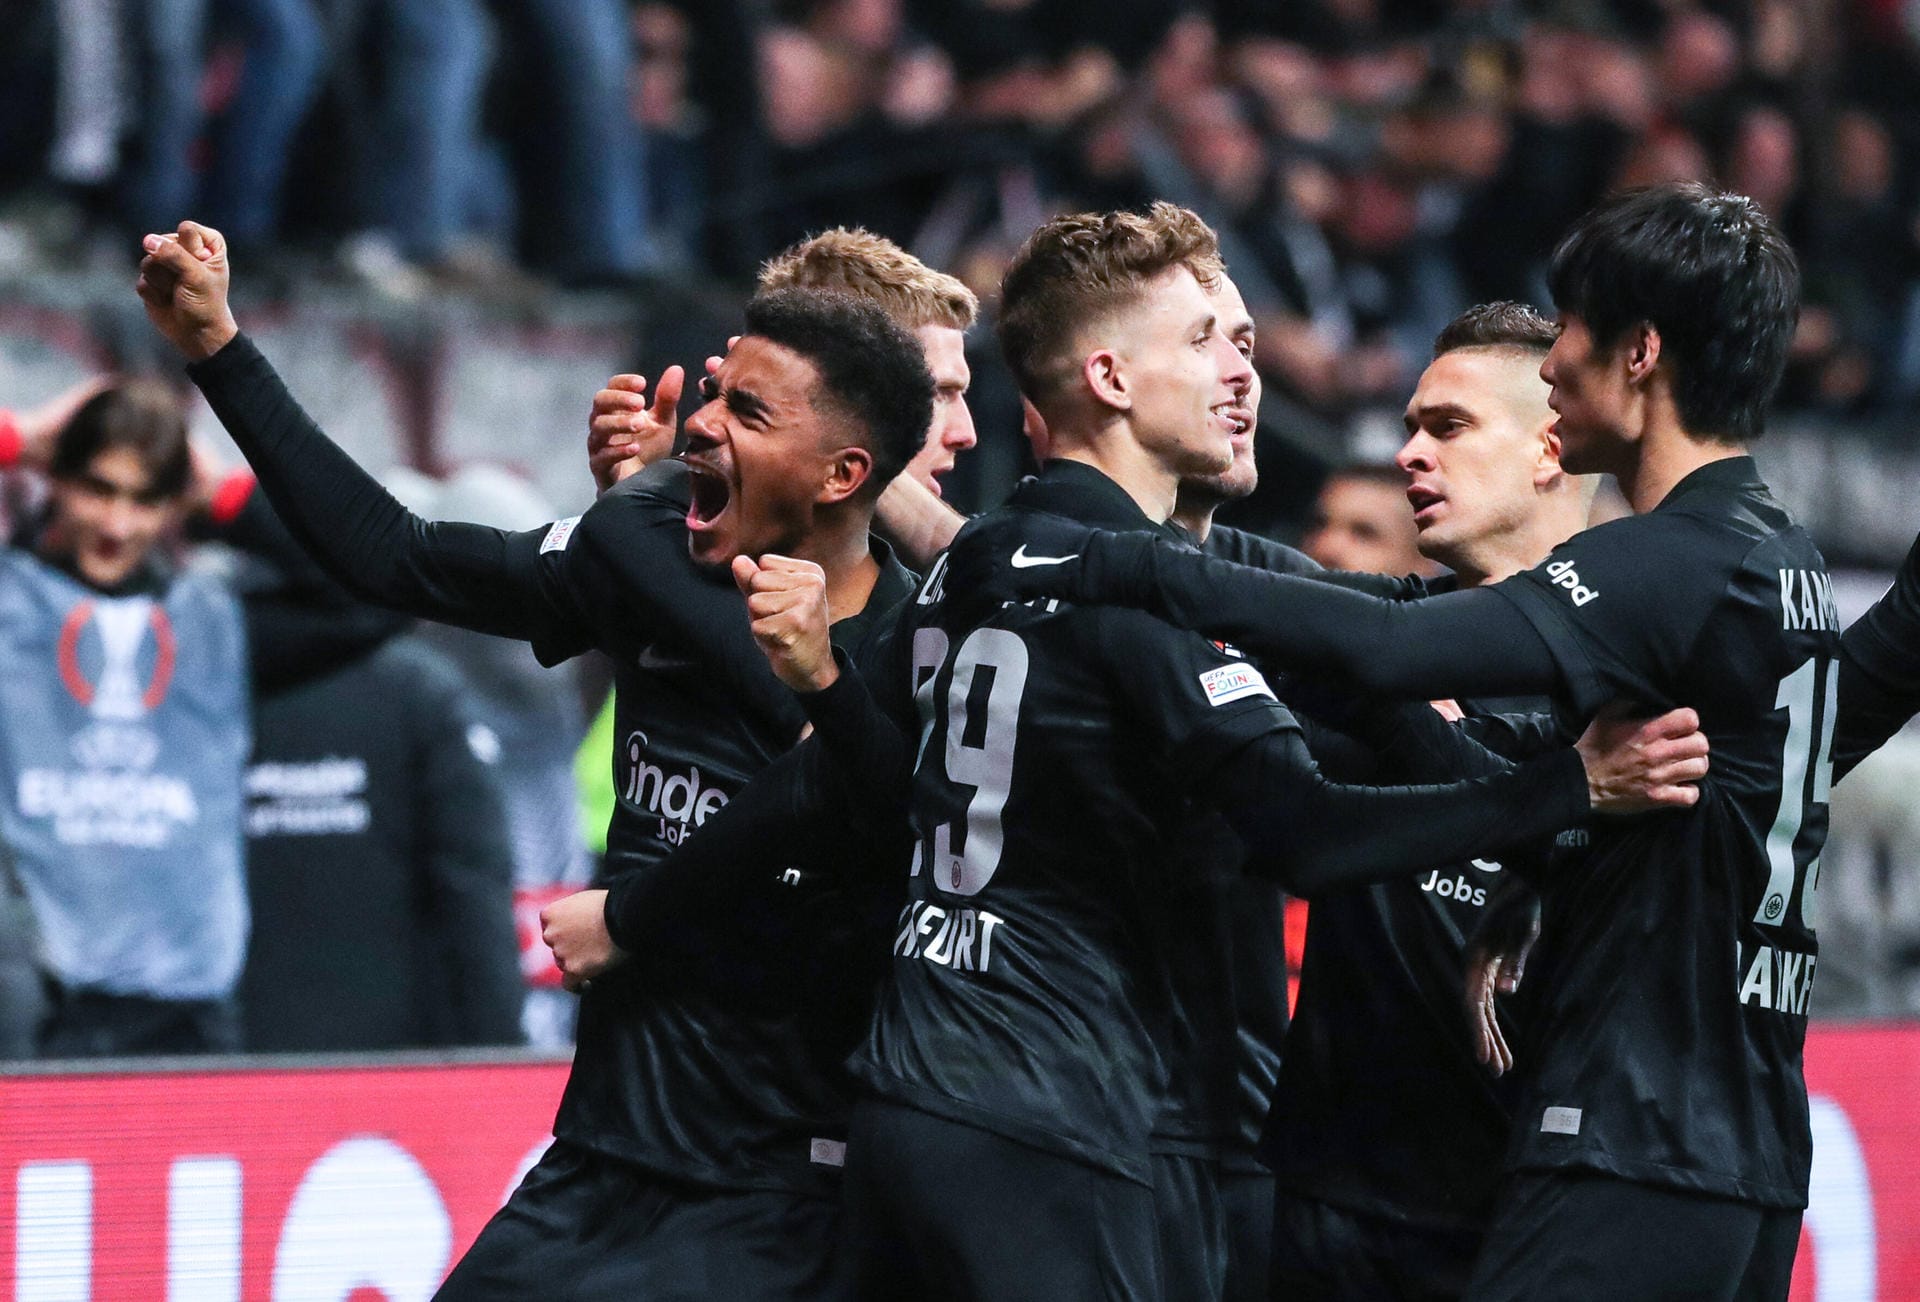 Eintracht Frankfurt hat im Hinspiel des Viertelfinales der Europa League den FC Barcelona an seine Grenzen geführt. Entscheidend war dafür eine geschlossene, starke Leistung als Kollektiv. Die SGE in der Einzelkritik.